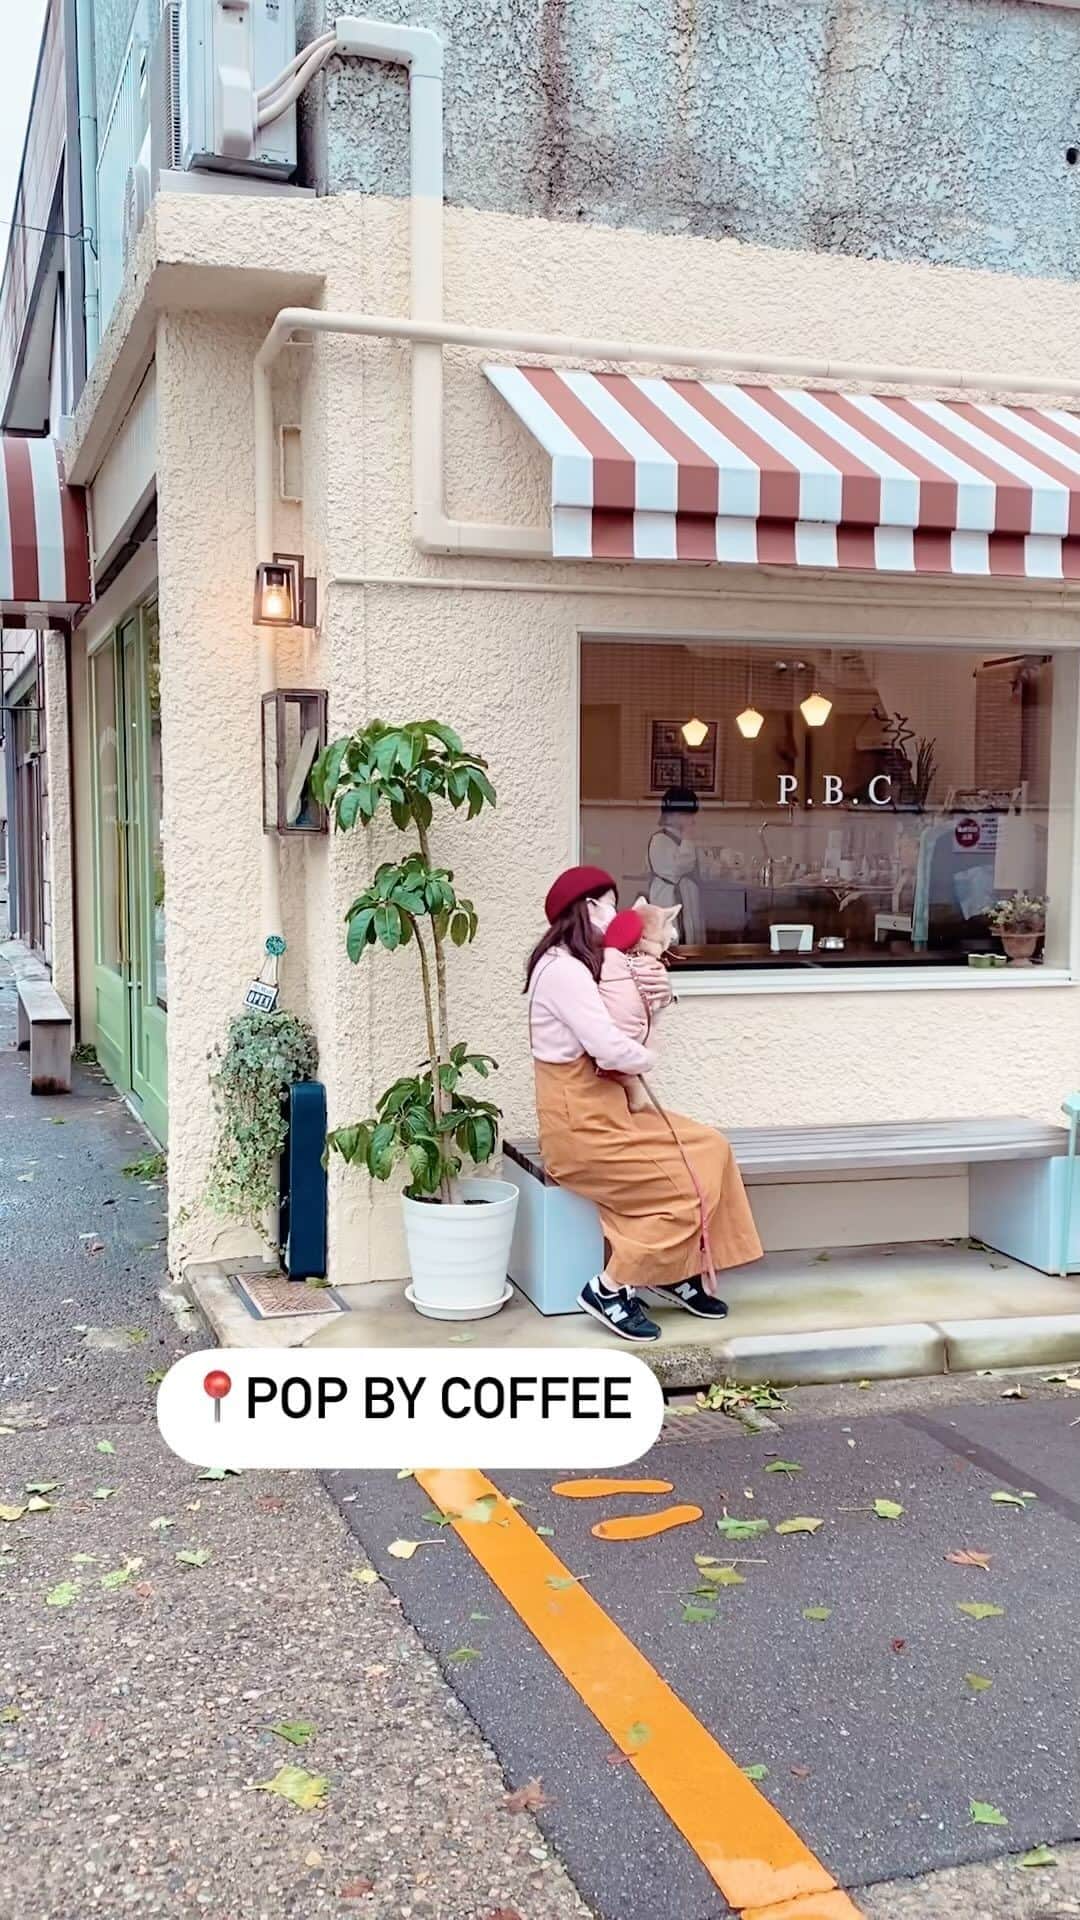 柴犬 けんしろう ゆりあのインスタグラム：「🐶☕️  秋の金沢をぶらゆりあ🐾 〜POP BY COFFEE 〜  この日の金沢は時折小雨の降る 肌寒い1日だったので、あったかい店内は ゆりあも私たち姉妹もほっとひと息つける cafe timeとなりました☕️  おいしいサンドとスイーツ&コーヒー 大きな窓から眺める街の風景 流れる心地よい音楽 私たちの住む街にも こんな素敵なcafeがあったらいいなぁ。  ゆりあさんは居心地良すぎて 毎回スヤスヤ寝てそう笑。  いつも金沢へ出かける時は 午前中に行きたいところを巡って さっと帰る、が、お決まりだったのですが (何しろガクけんゆり連れの時もあったので！) 今回は夕方までたっぷり楽しむことができました。 姉妹でこんな風に散策したのは高校生以来かも？  お姉ちゃん、誕生日のお祝いに cafeごちそうしてくれてありがとう♡ クリスマスリース作りや アドベントカレンダーの飾りつけにも感謝！  #popbycoffee #cafe #coffee  #kanazawa」